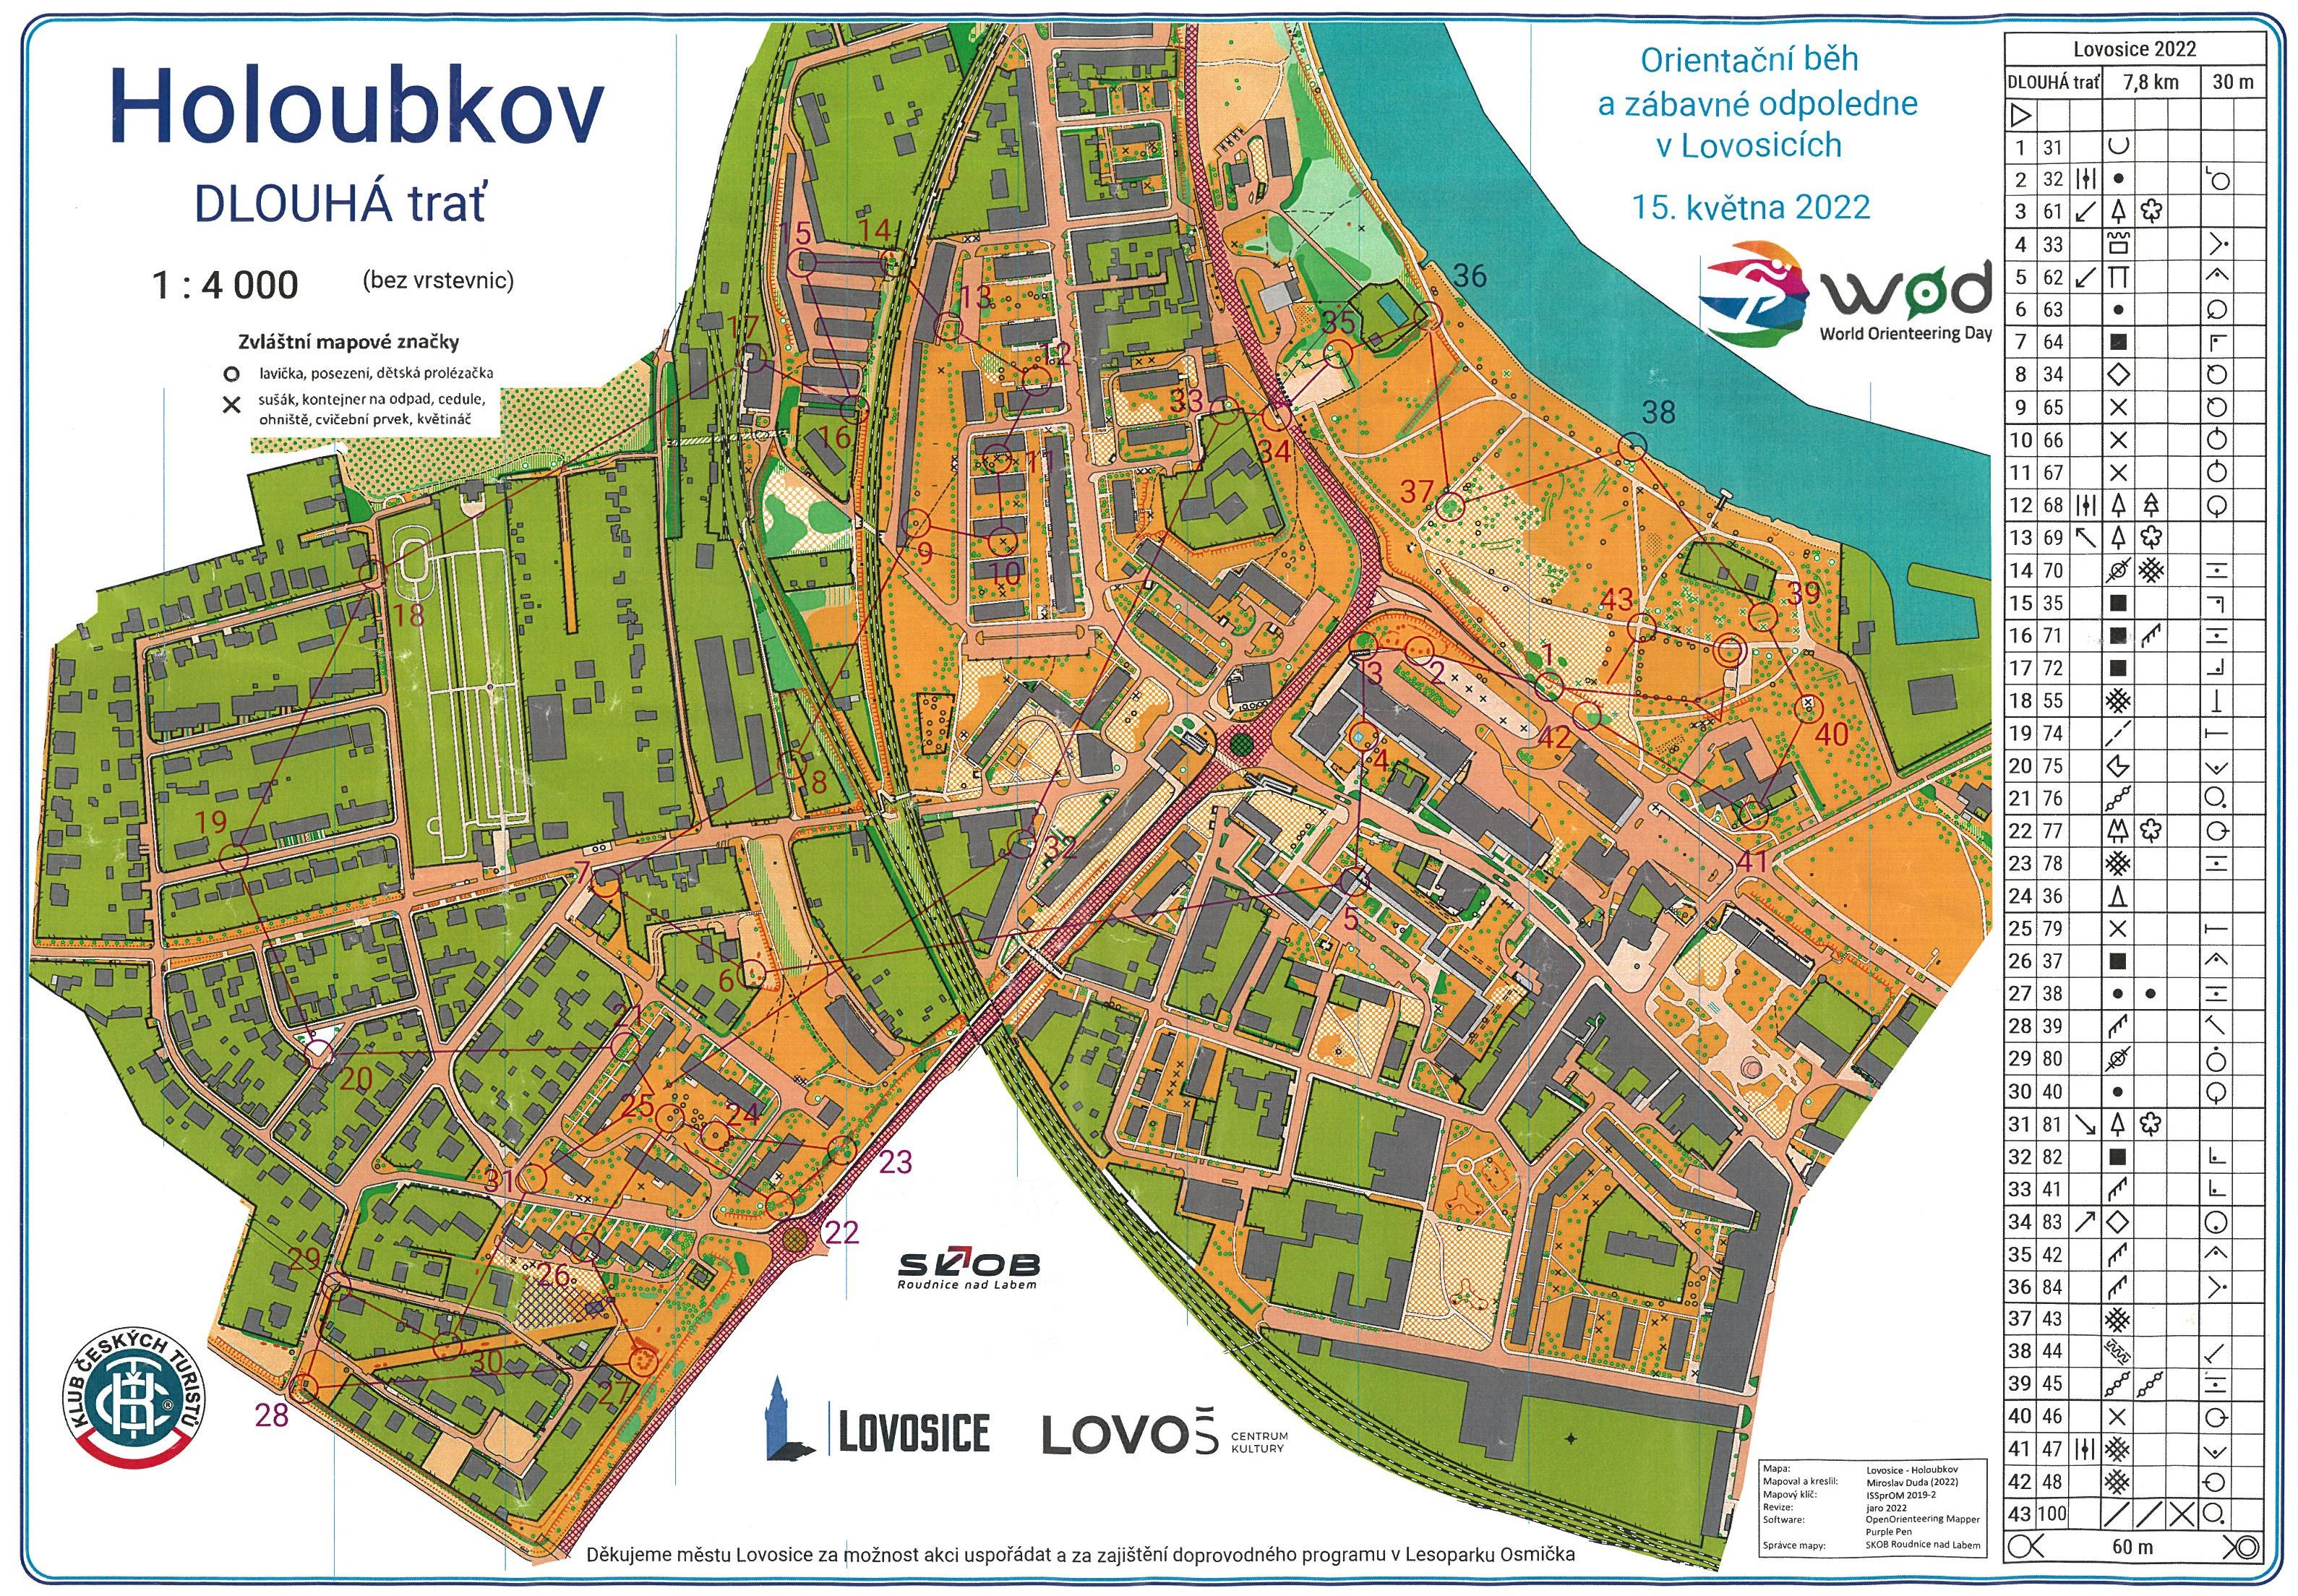 Lovosice City Race (WOD) (15.05.2022)